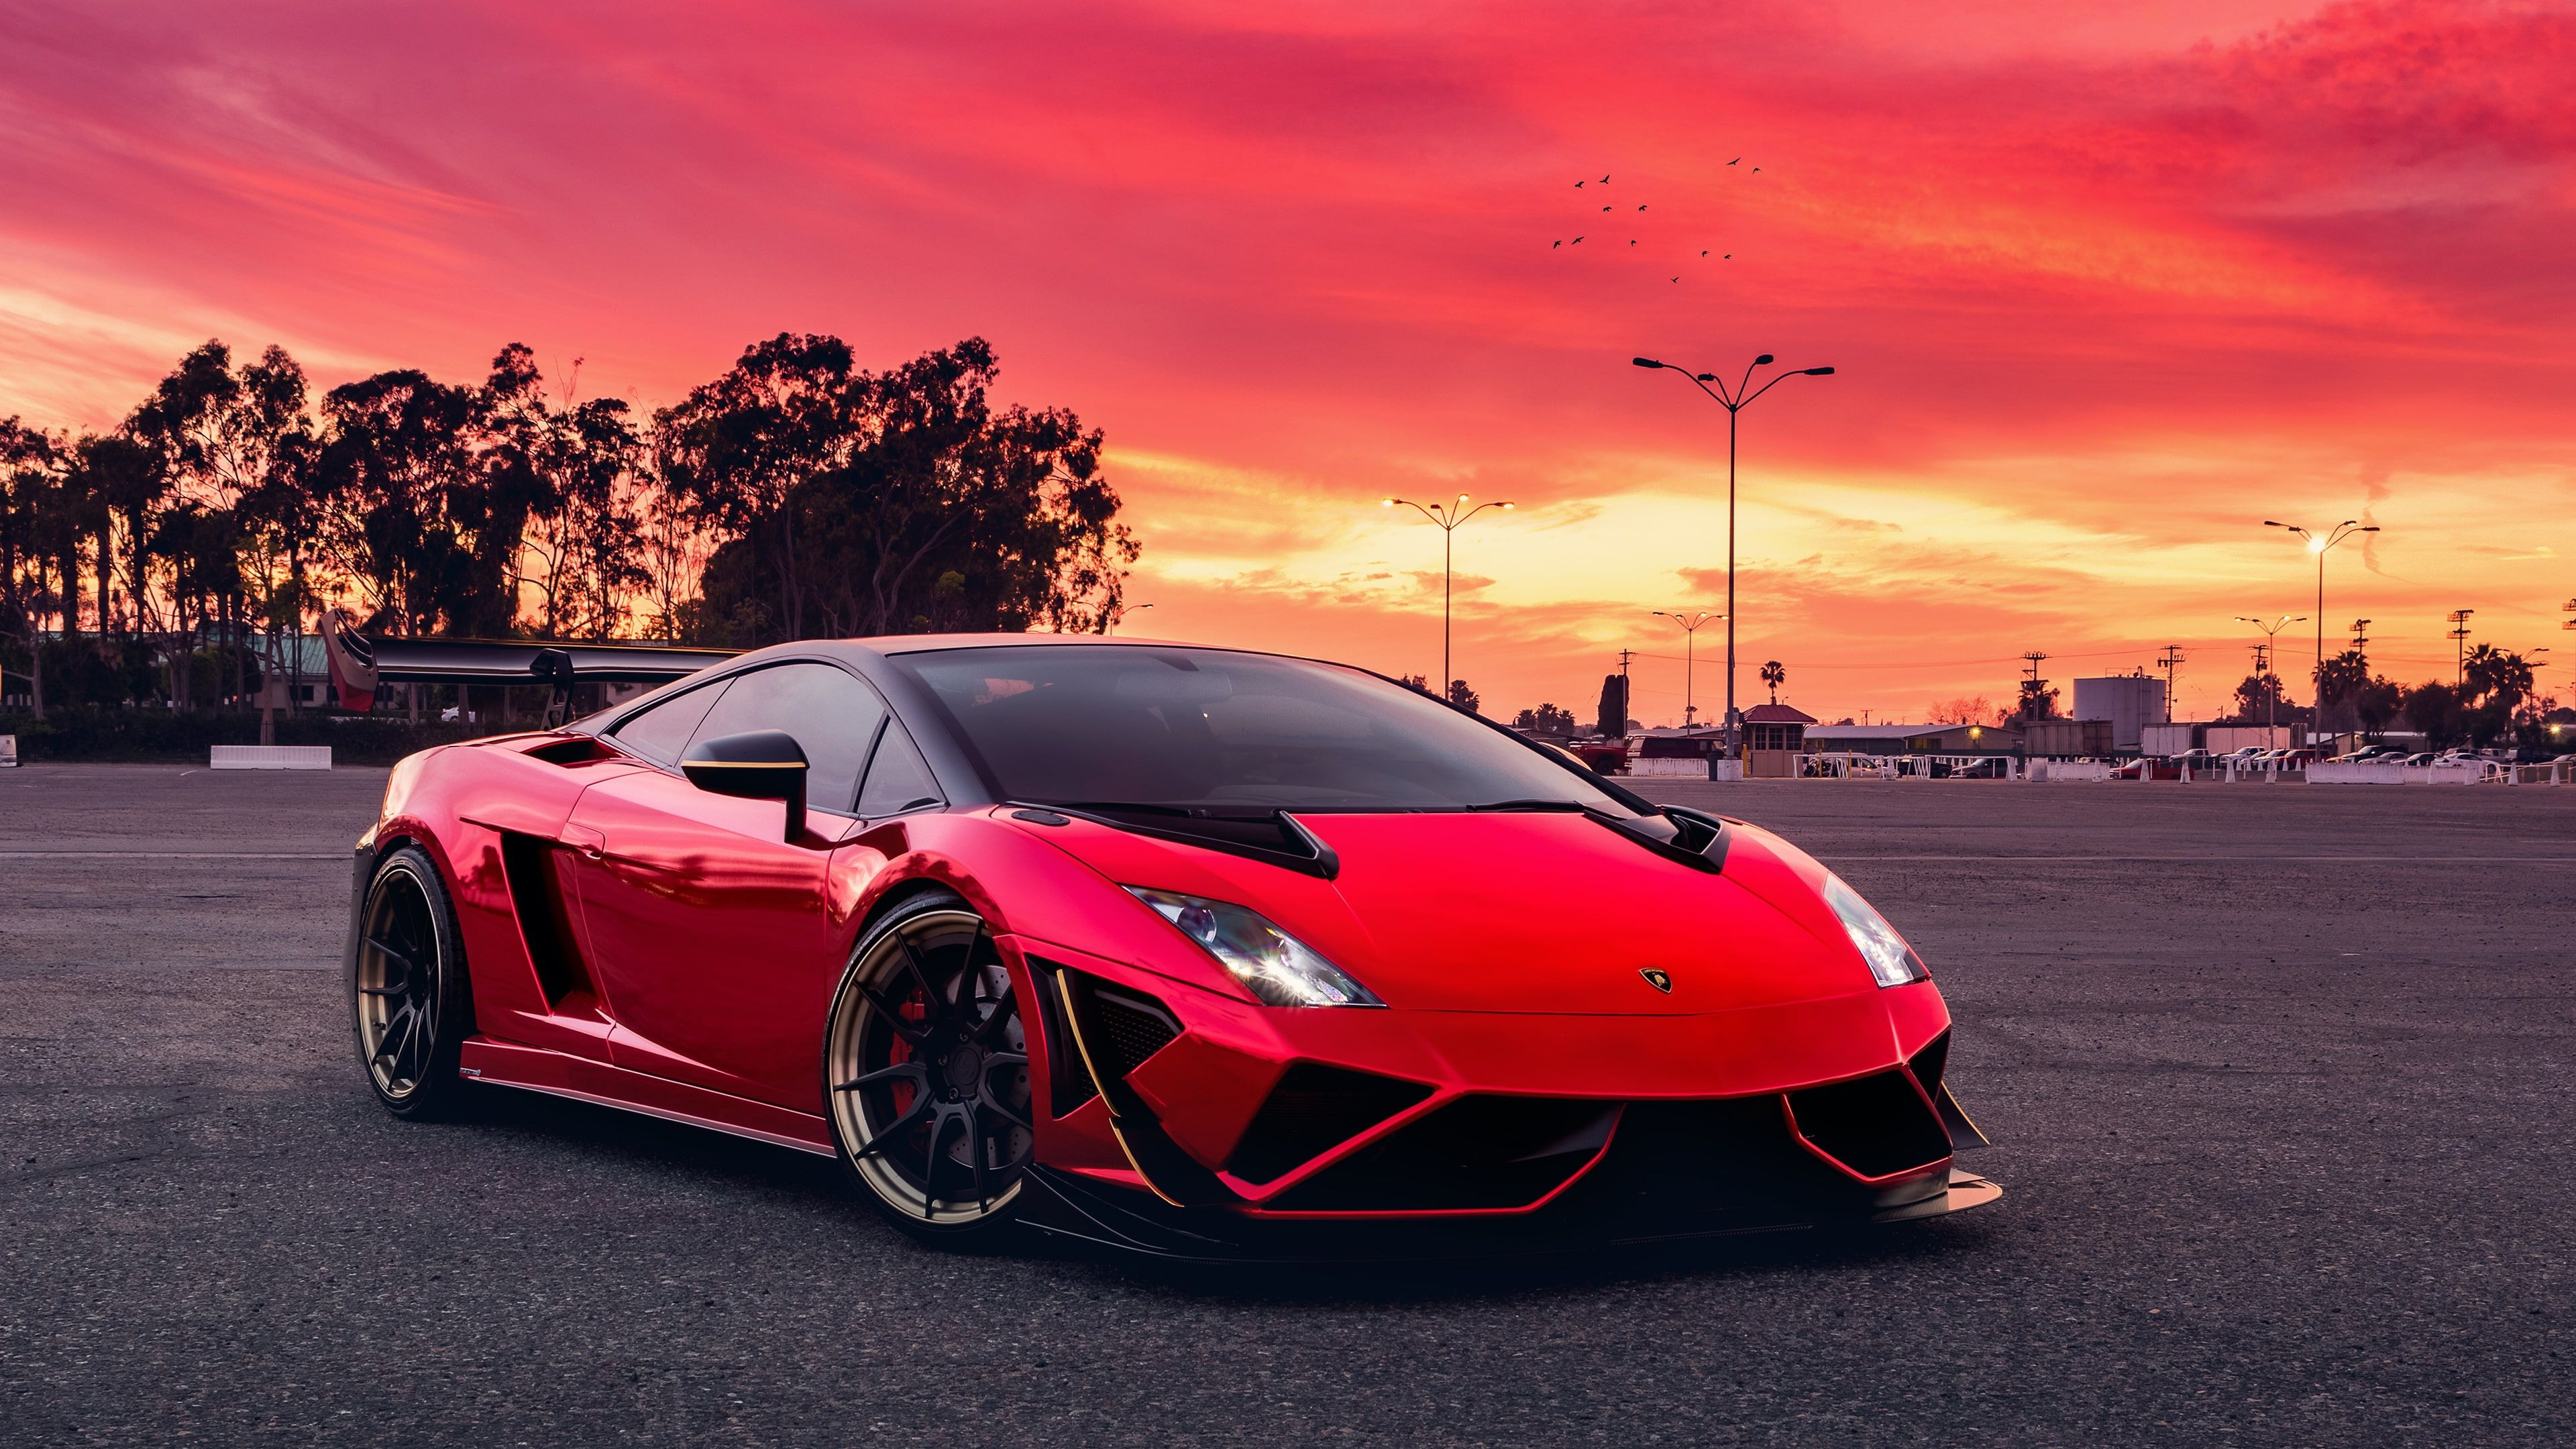 3840x2160 Red car wallpaper, red sky, sports car, vehicle, supercar, asphalt, lamborghini | Lamborghini gallardo, Supercars, Lamborghini